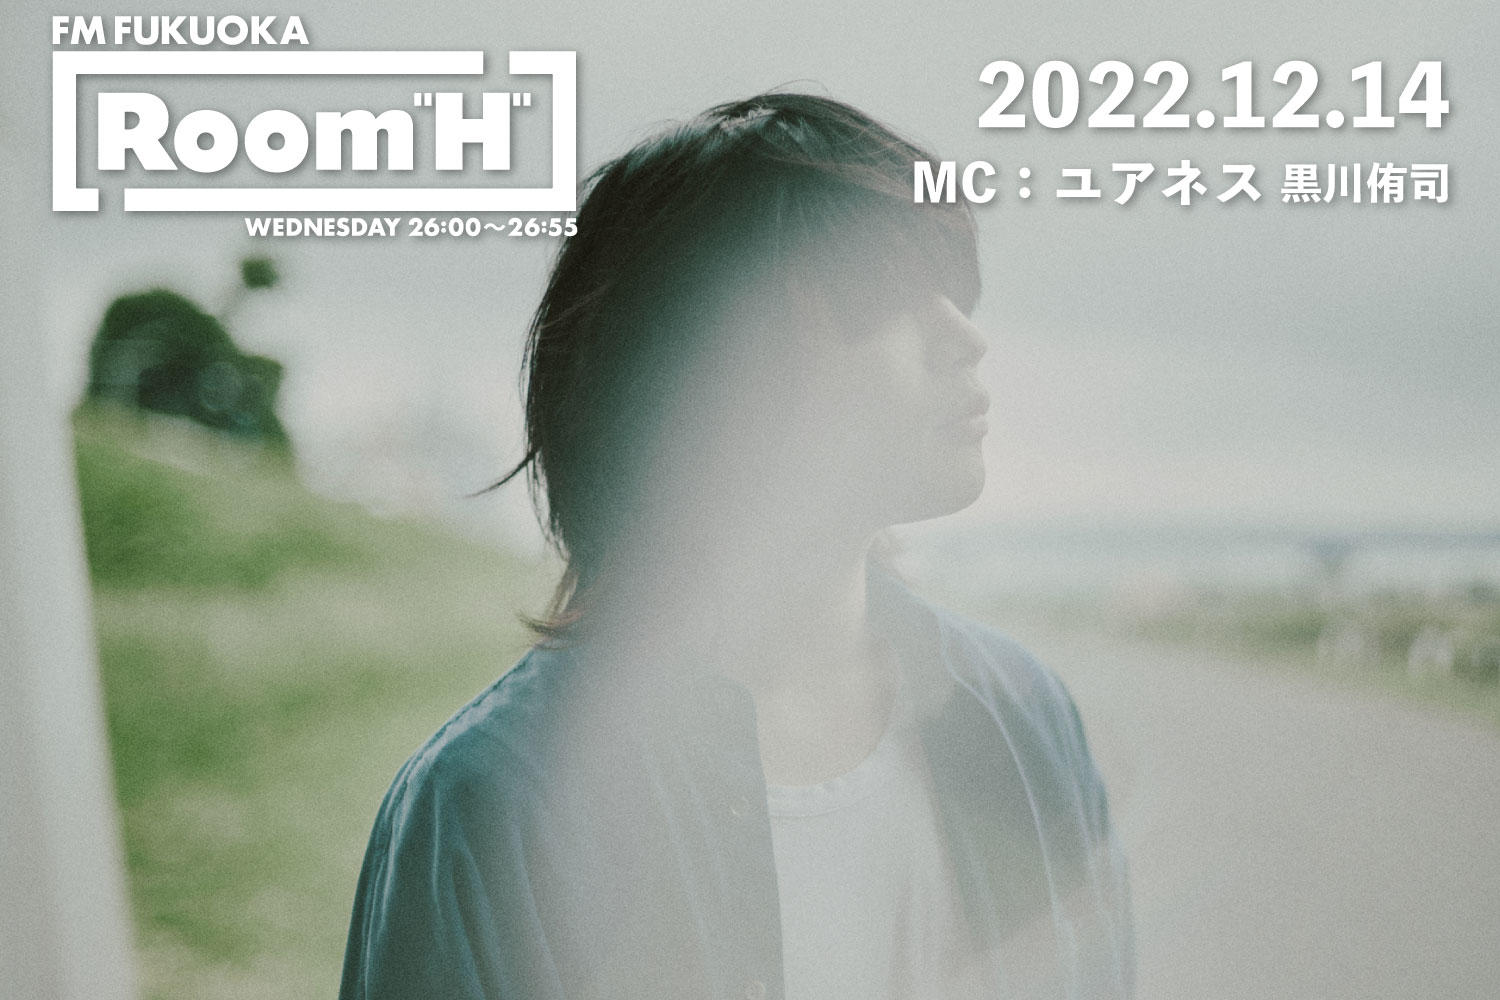 【読むラジオ】MC：黒川侑司(ユアネス) 台湾での海外初ライブの模様を語る！「Room H」-2022.12.14-